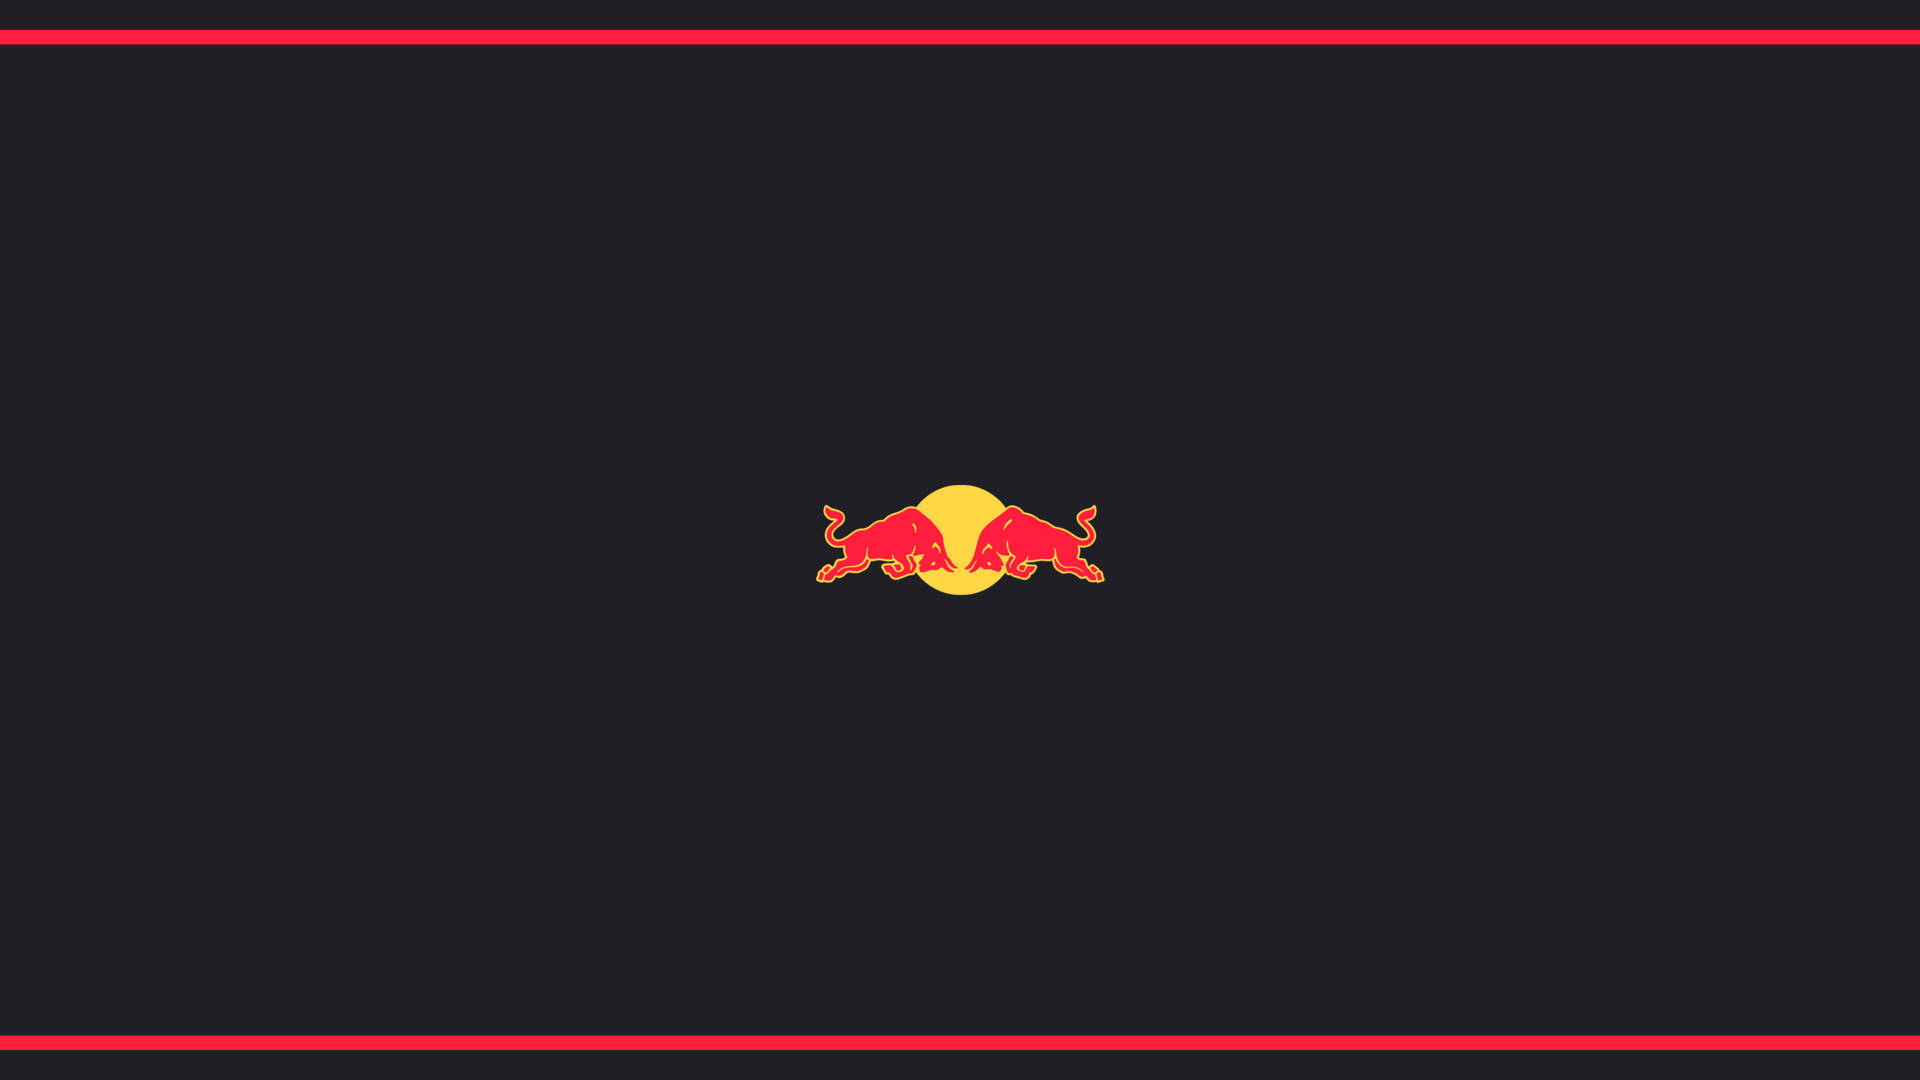 Minimalist Red Bull Vector Wallpaper